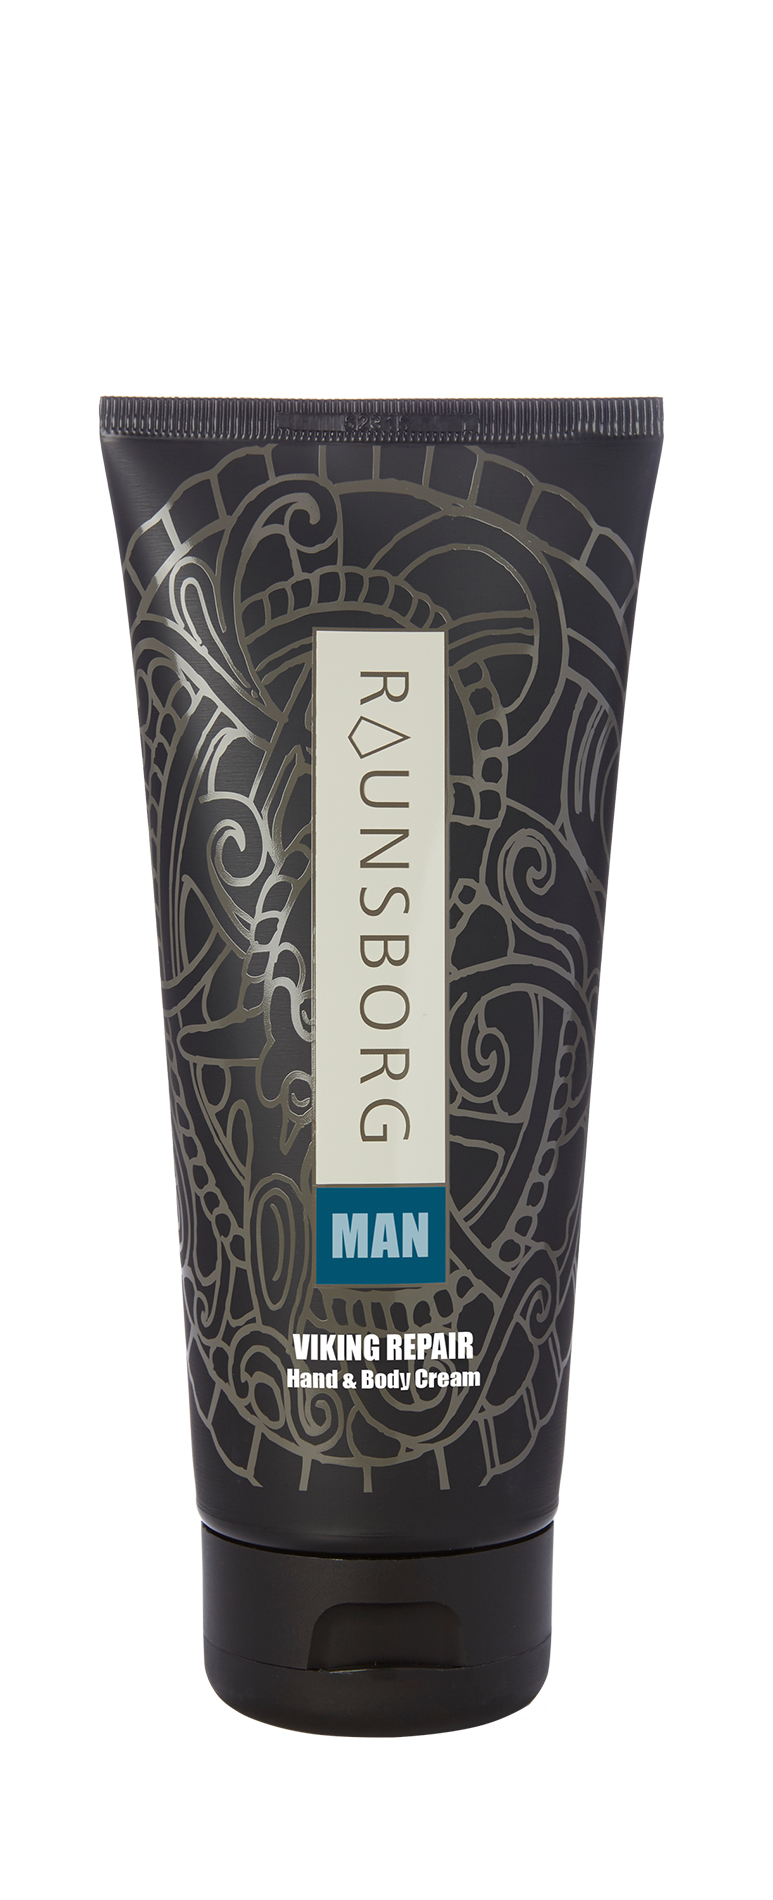 Raunsborg Man Viking Repair Hand & Body Cream 200 ml.